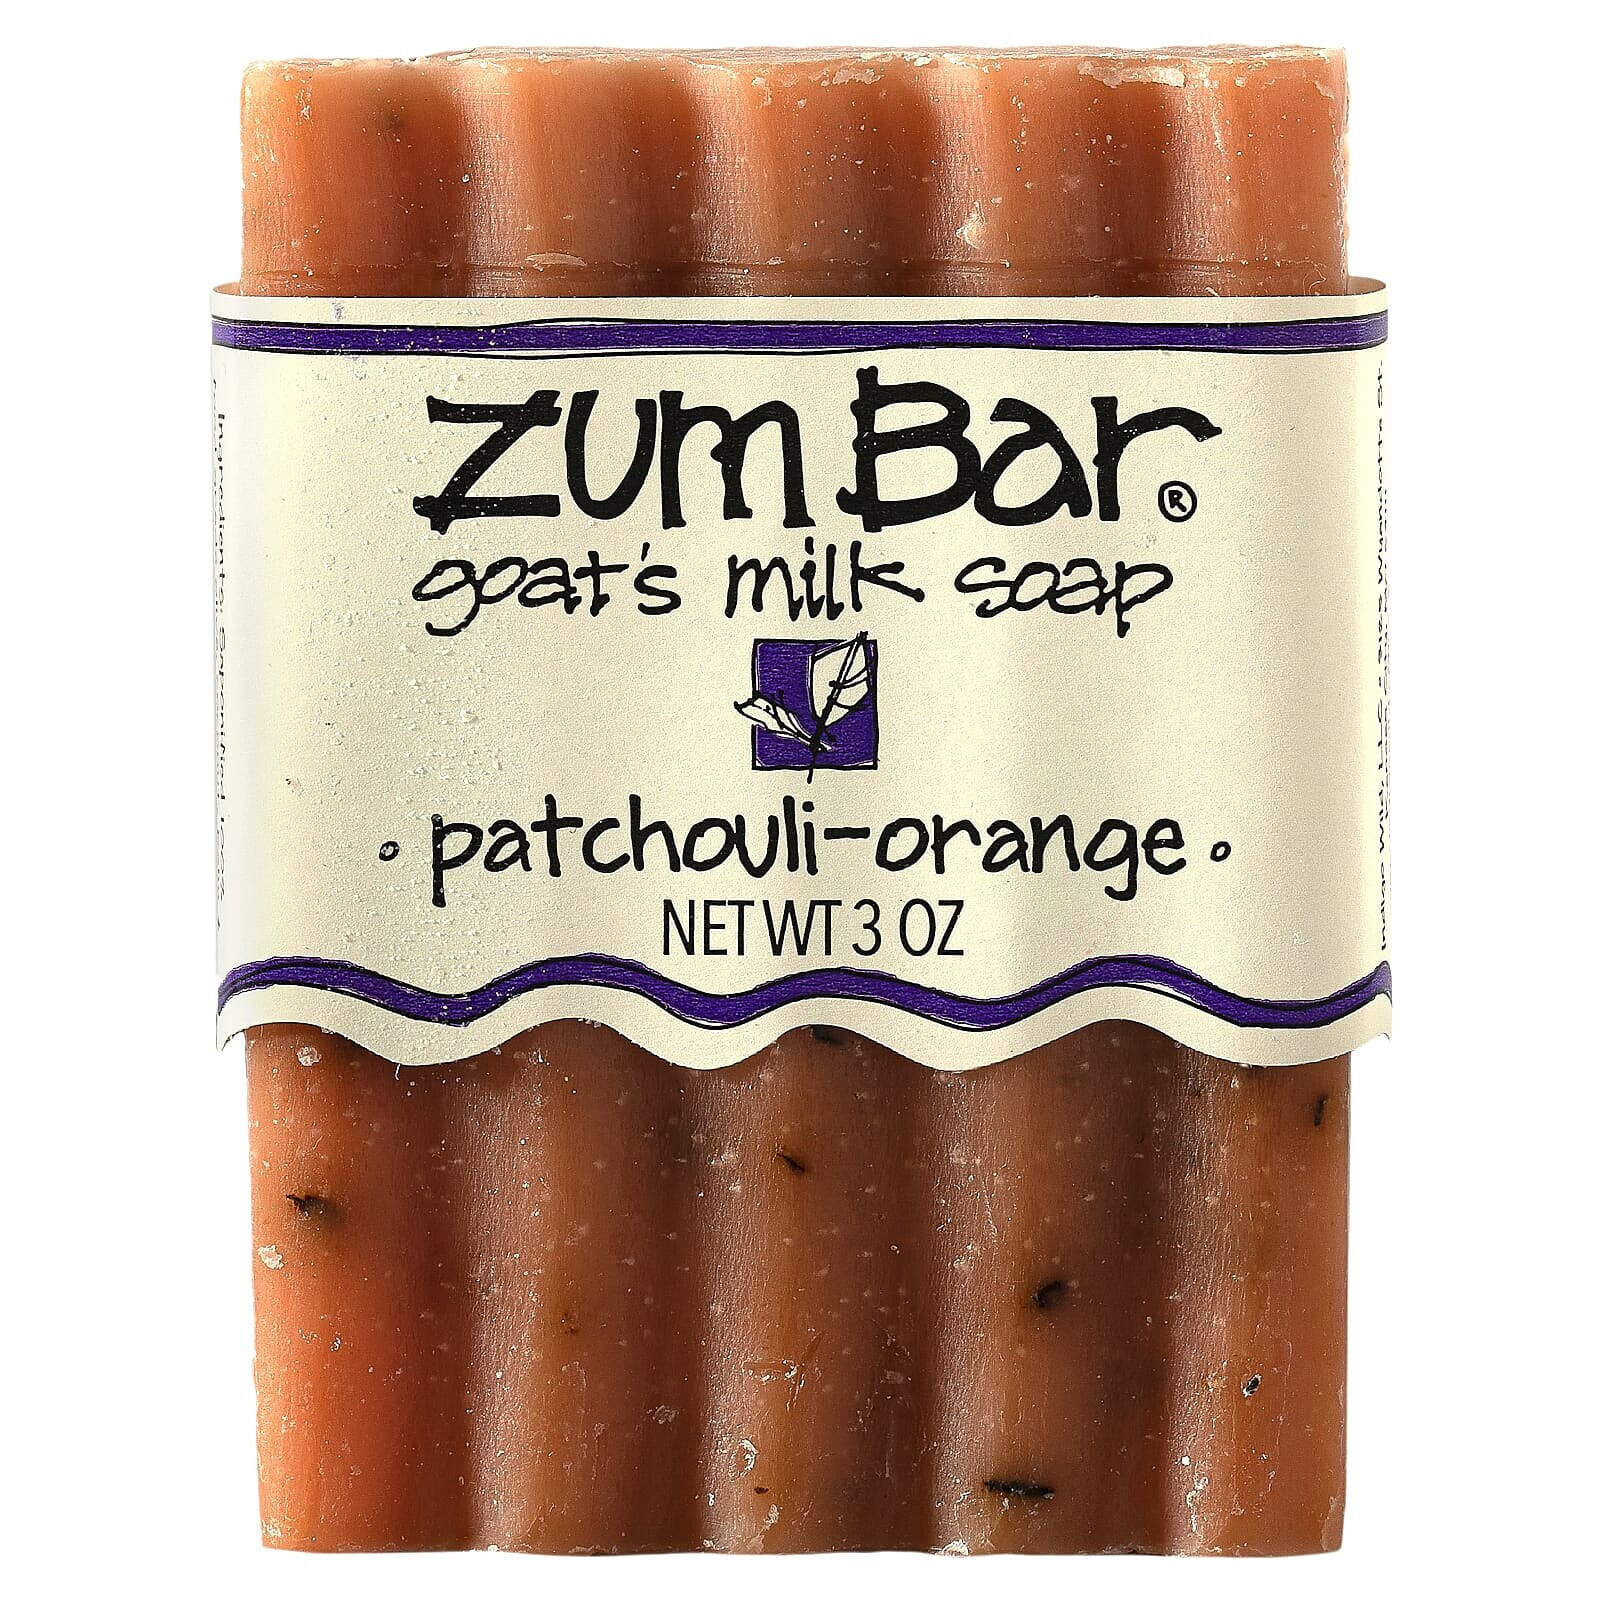 Zum Bar, Goat's Milk Soap, Patchouli-Orange, 3 oz